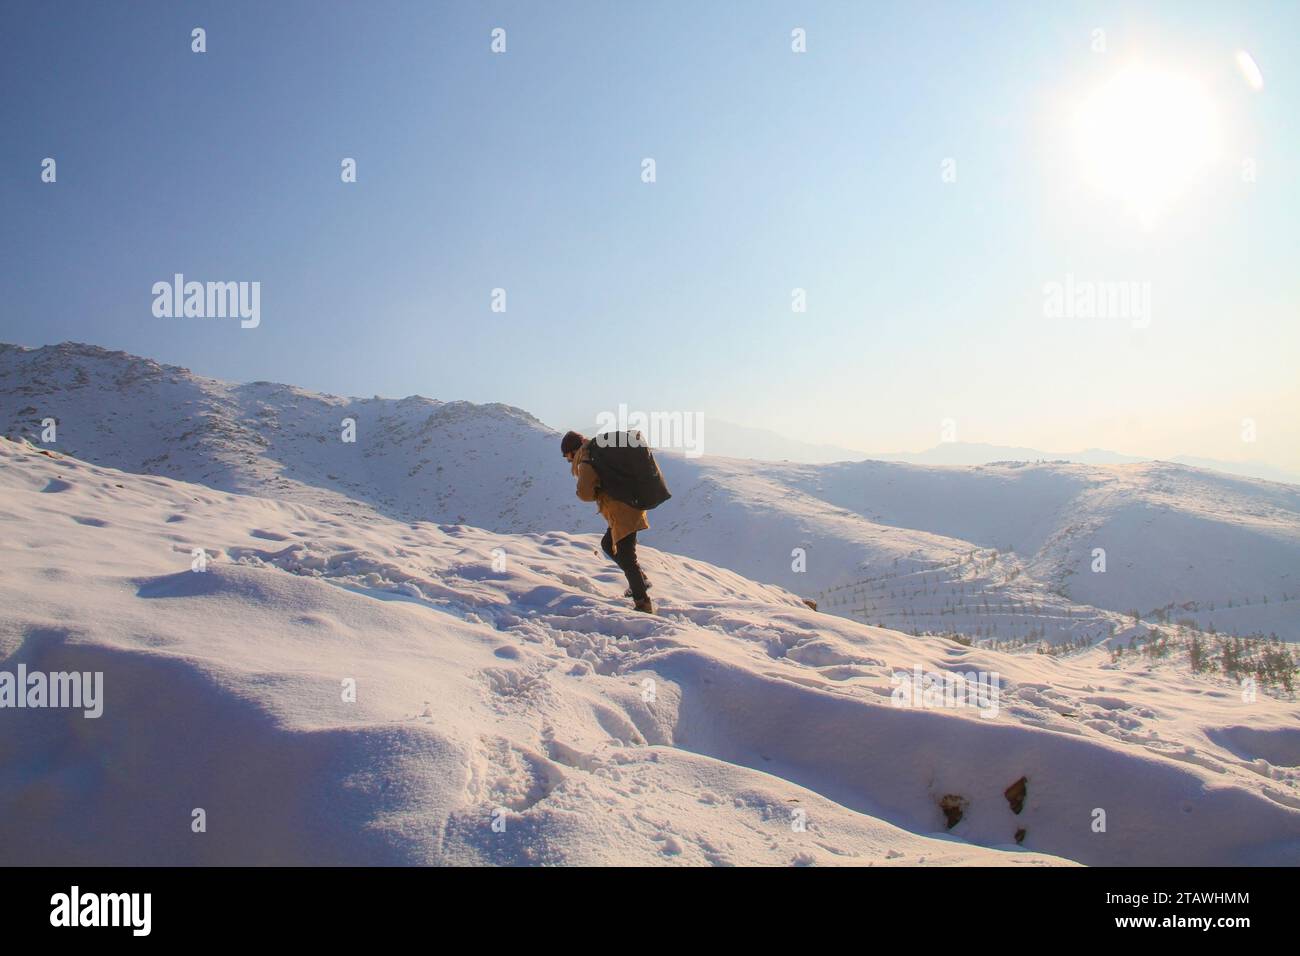 Un jeune homme randonnant au sommet des montagnes enneigées pendant la saison hivernale | randonnée hivernale | randonnée dans la neige. Banque D'Images